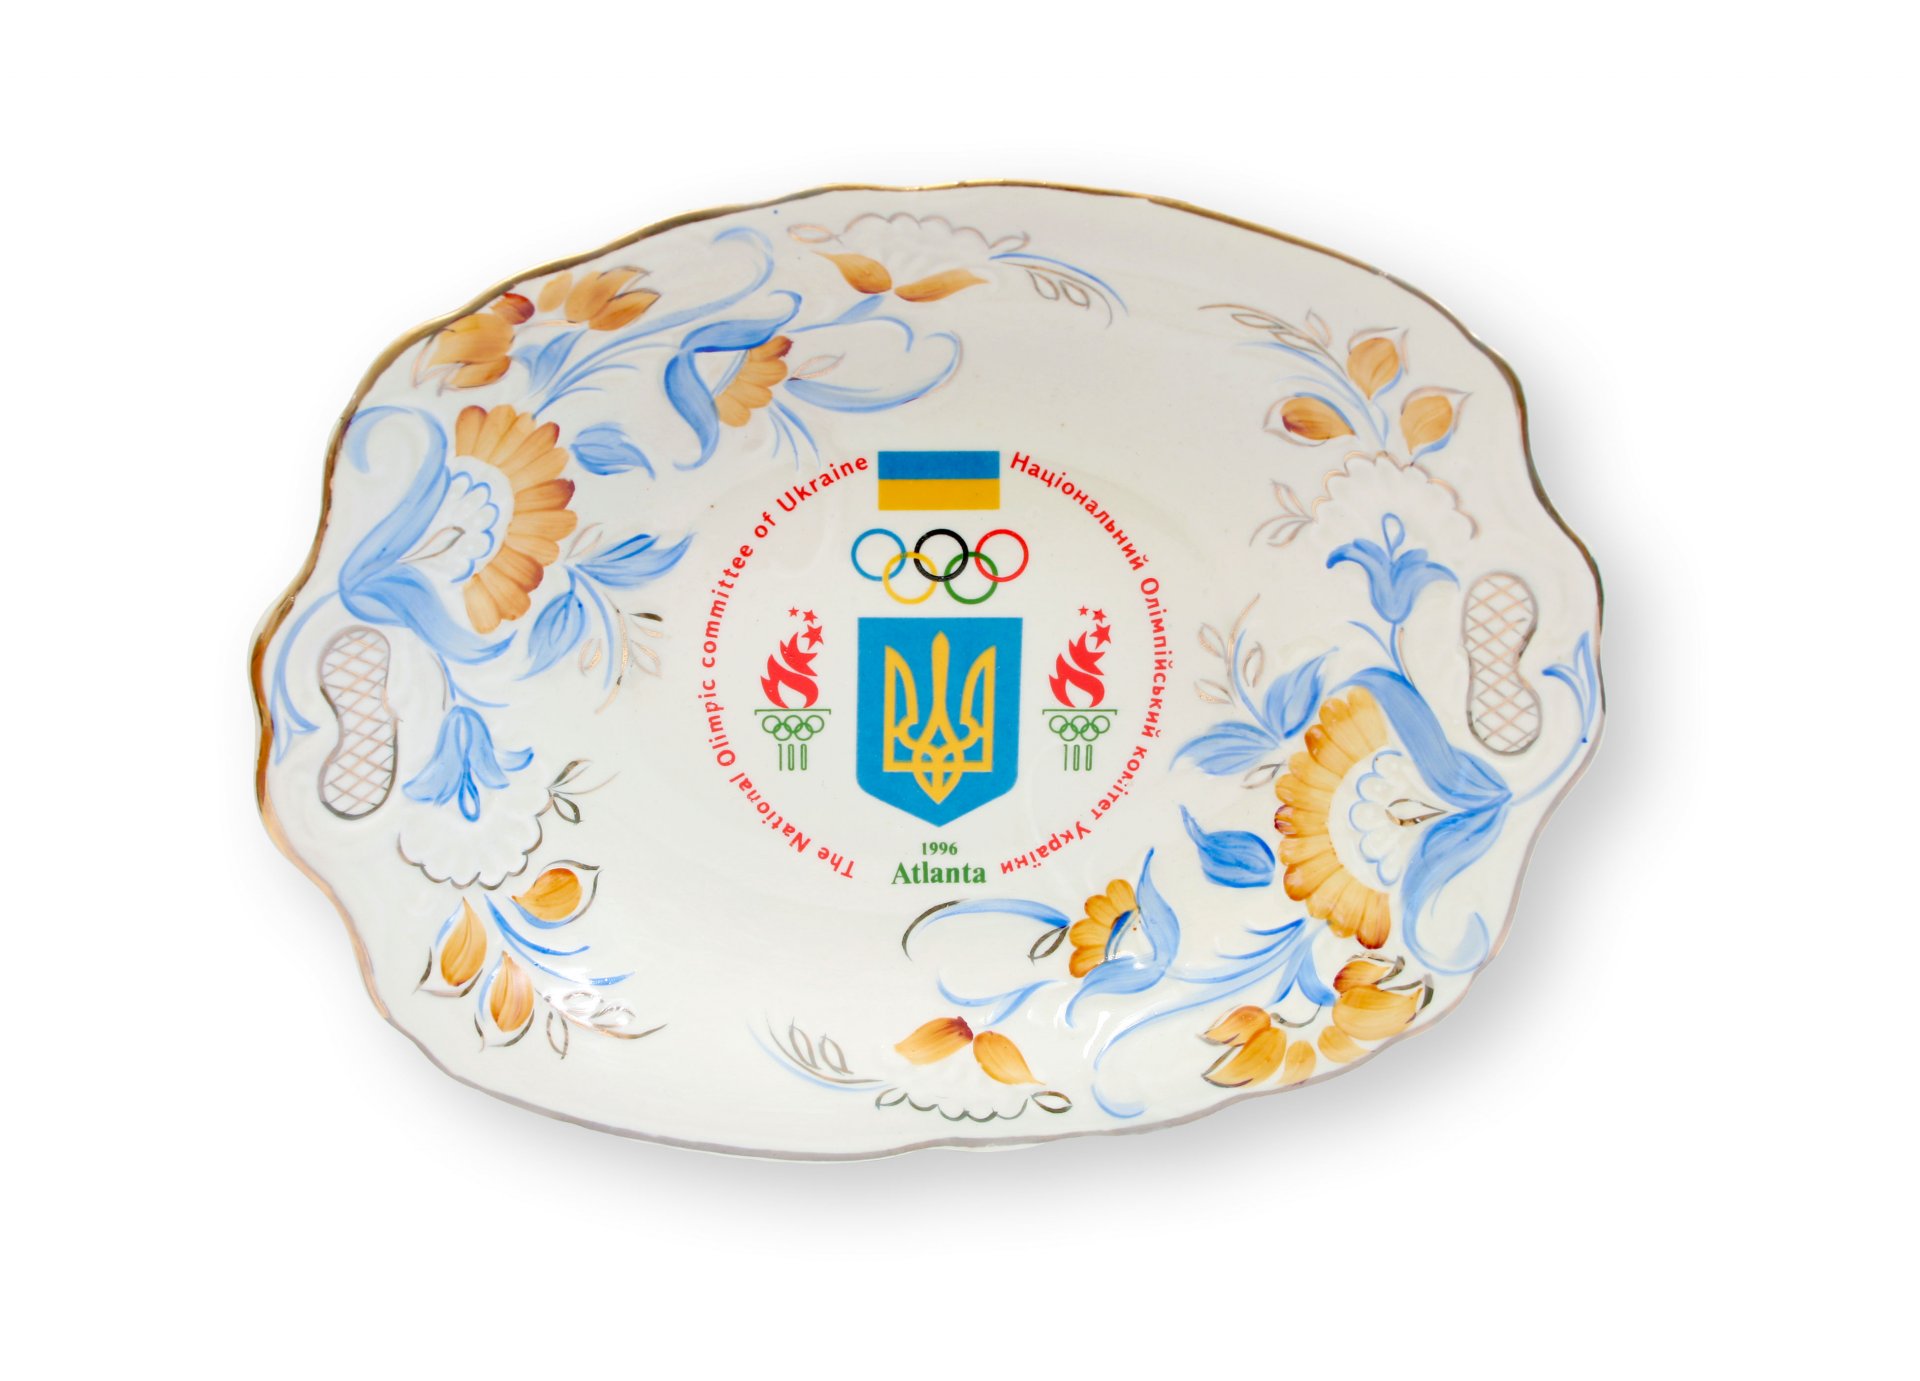 orzellanschale des Nationalen Olympischen Komitees der Ukraine zu den Olympischen Spielen 1996 in Atlanta.